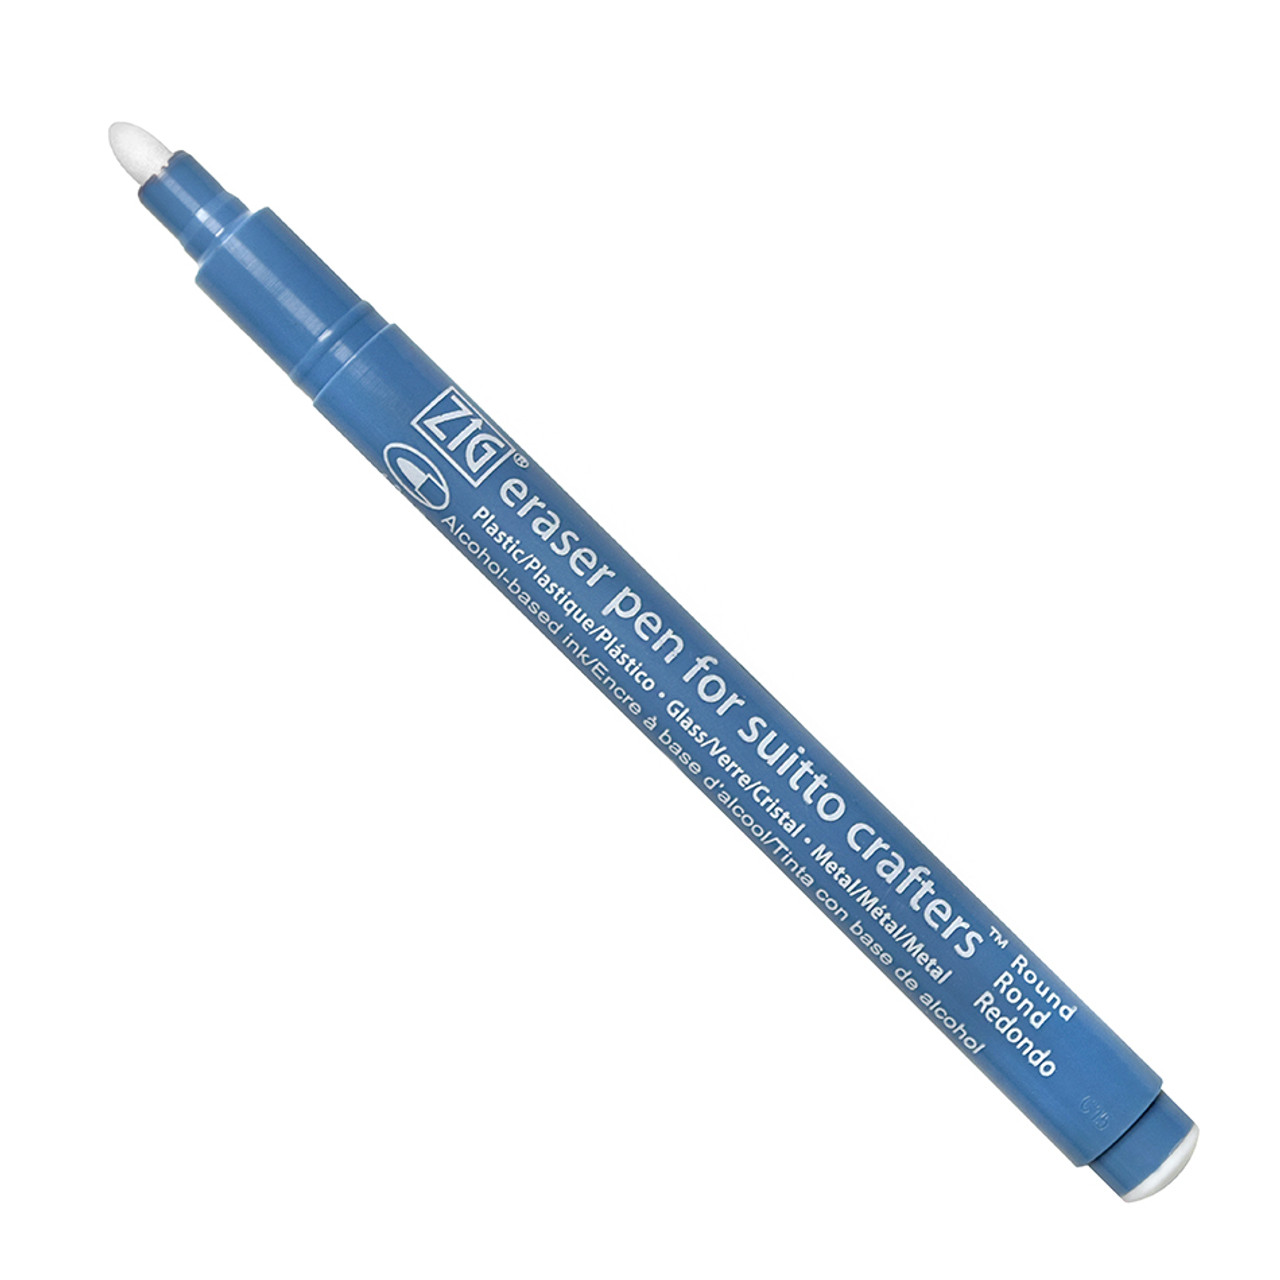 Zig Eraser Pen - Round Tip